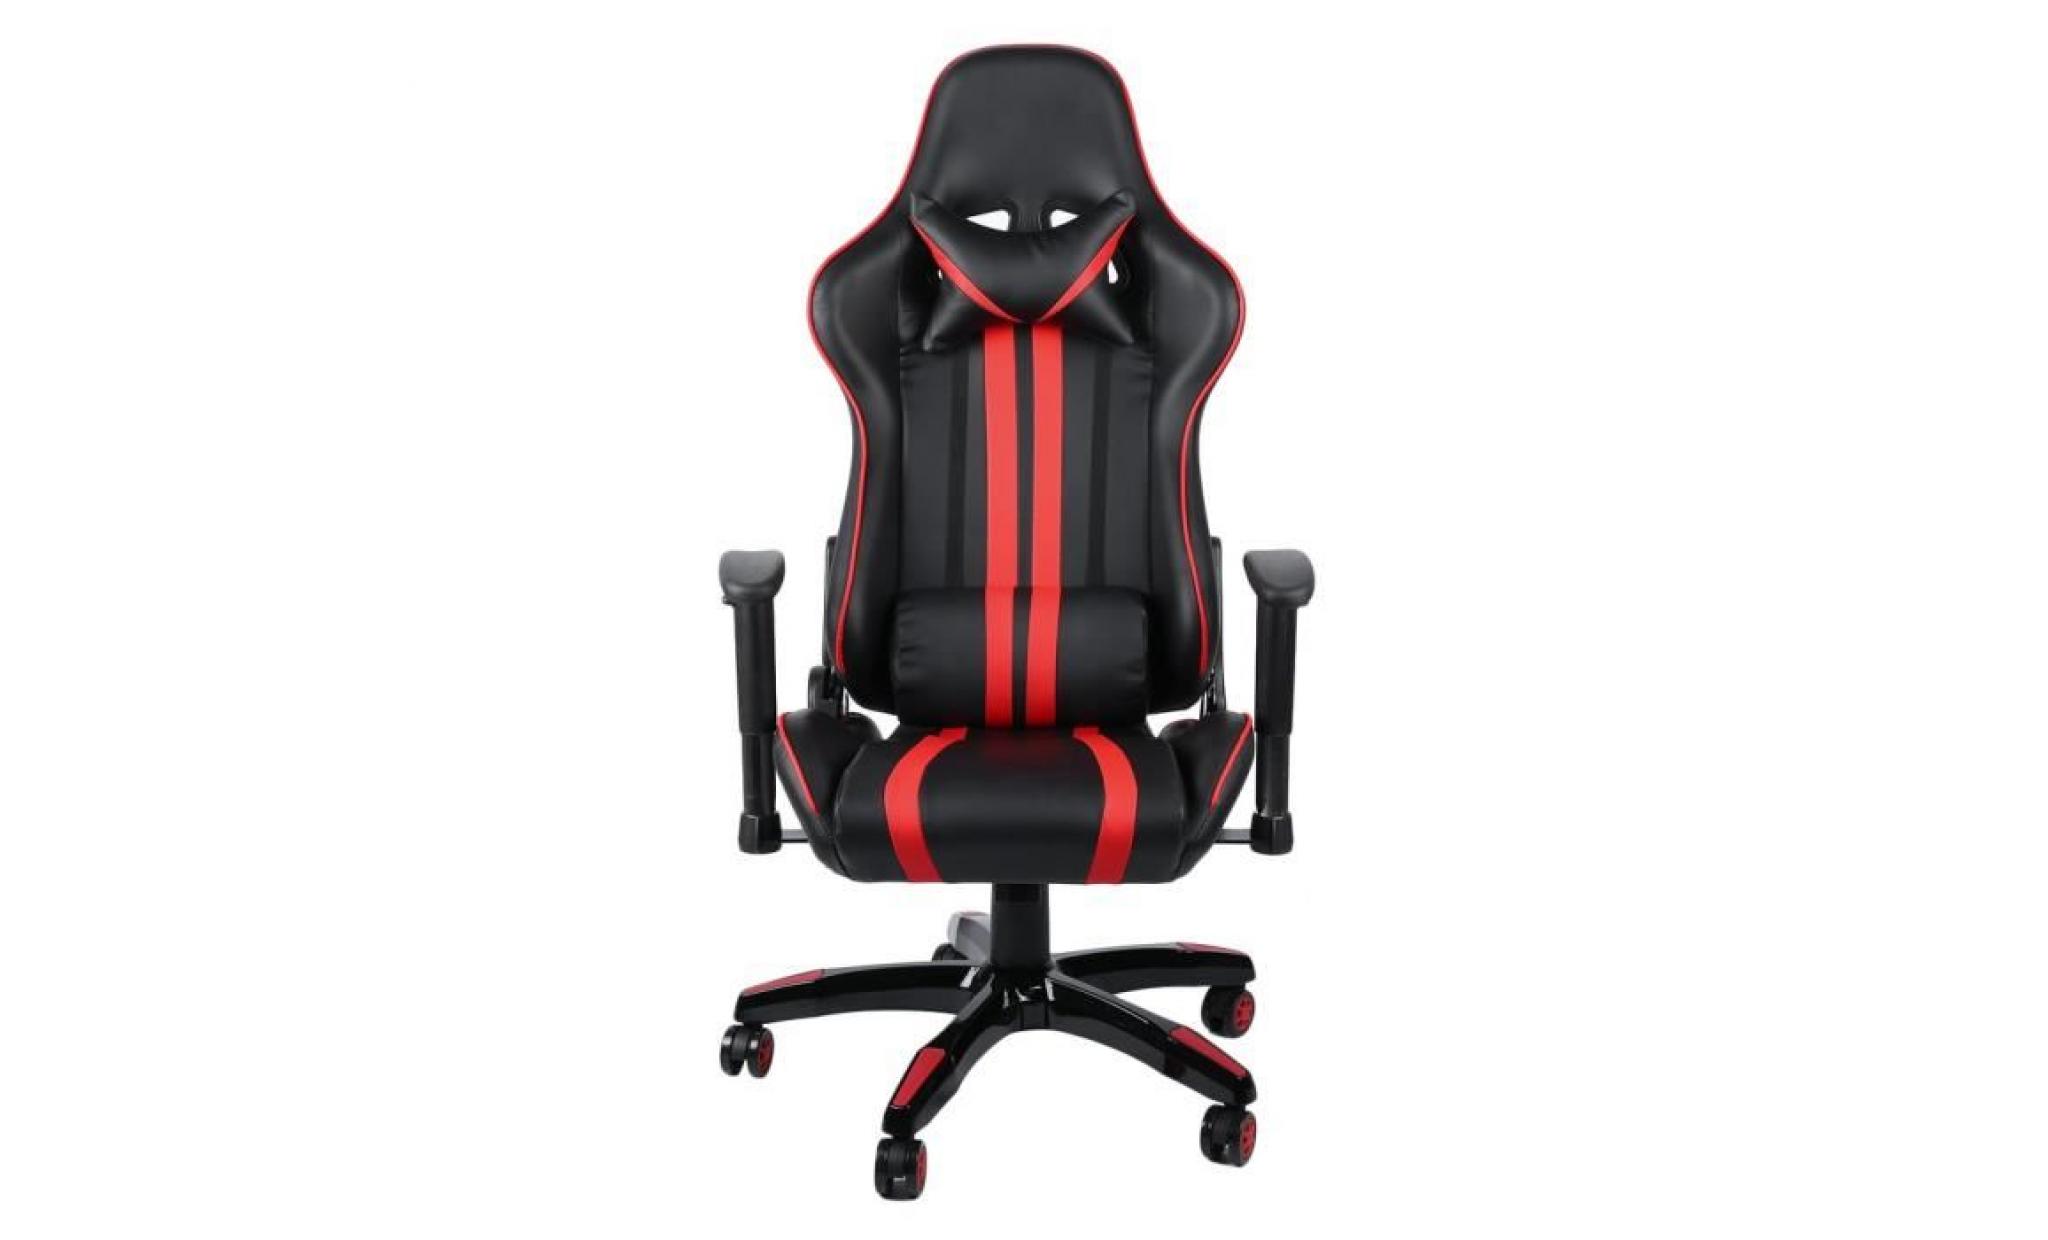 leshp® fauteuil de course à dossier haut en cuir   pivotant à 360 degrés   chaise bureau   rouge et noir